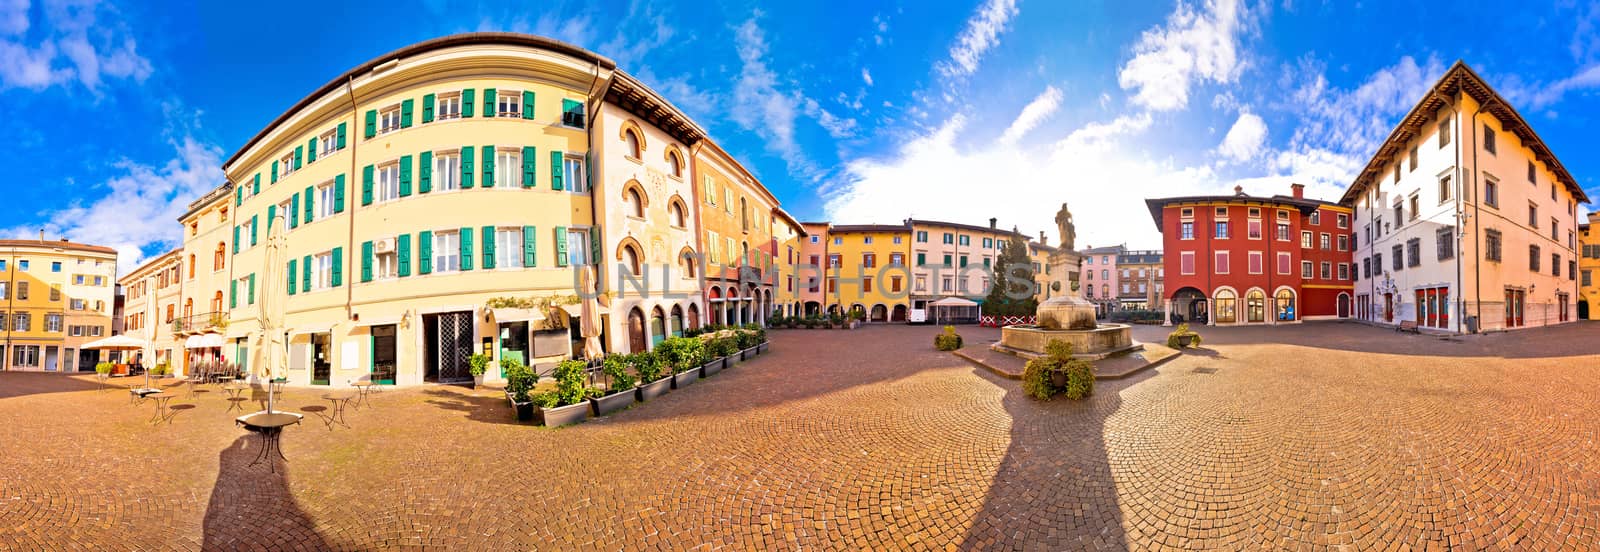 Town of Cividale del Friuli colorful Italian square panoramic vi by xbrchx